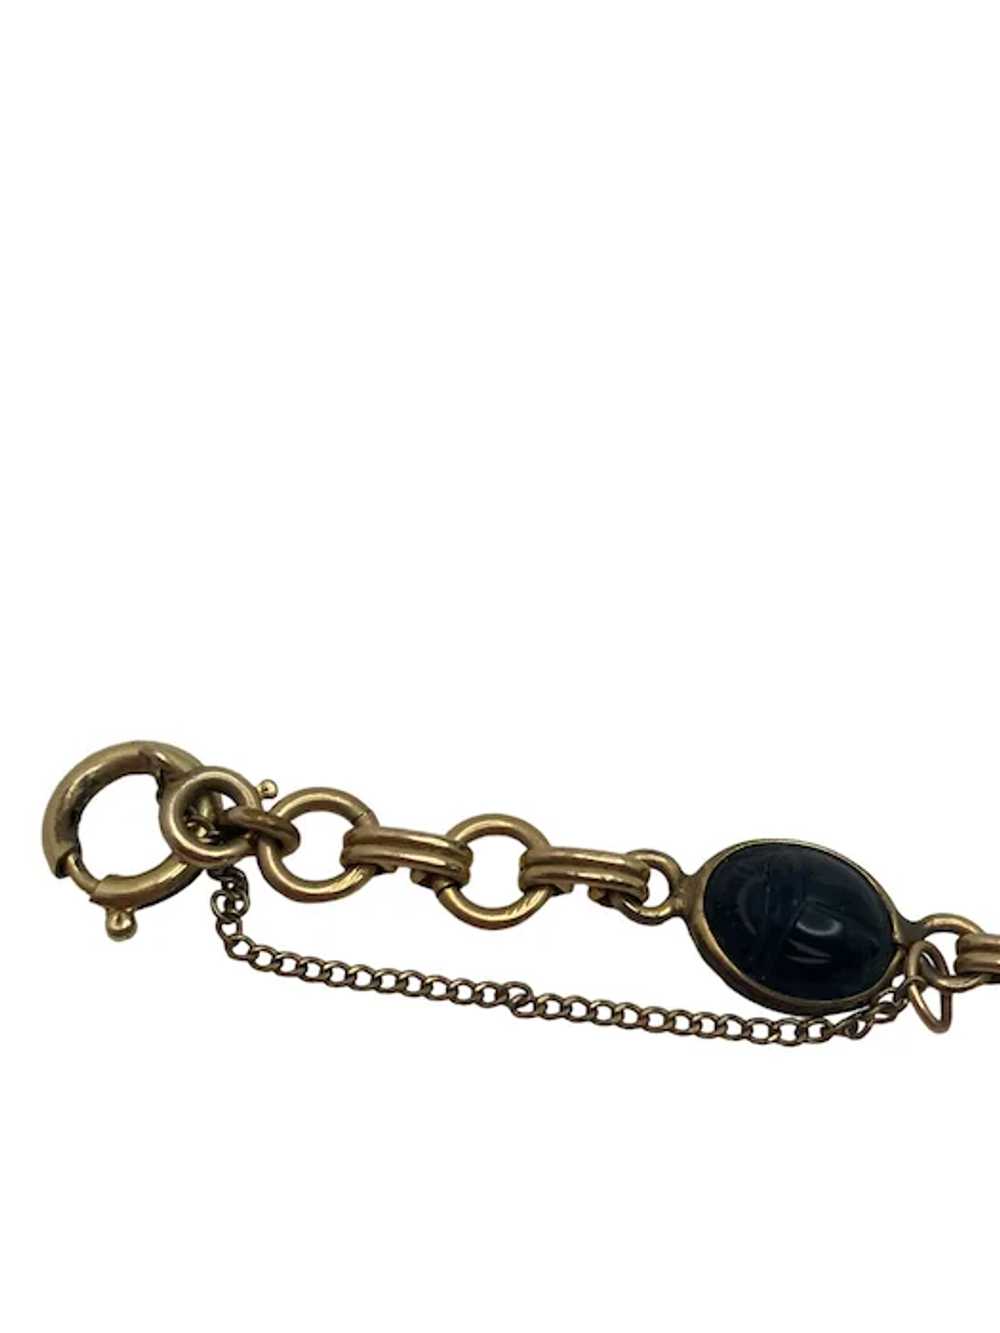 Vintage 12k Gold Filled Scarab Bracelet - image 11